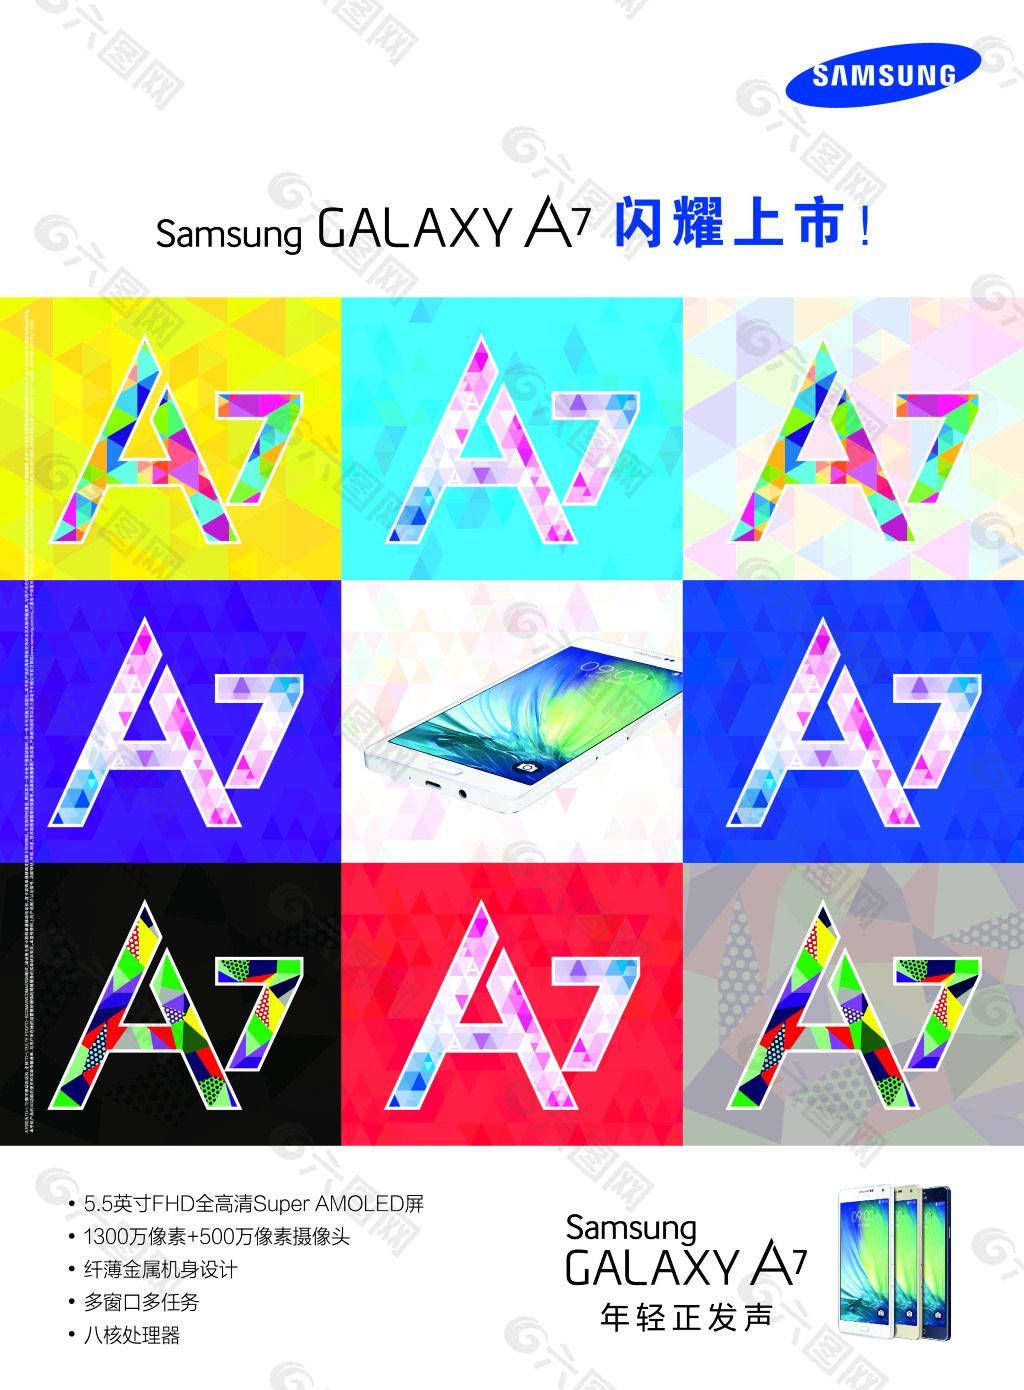 Samsung Galaxy A7 4 – Telegraph